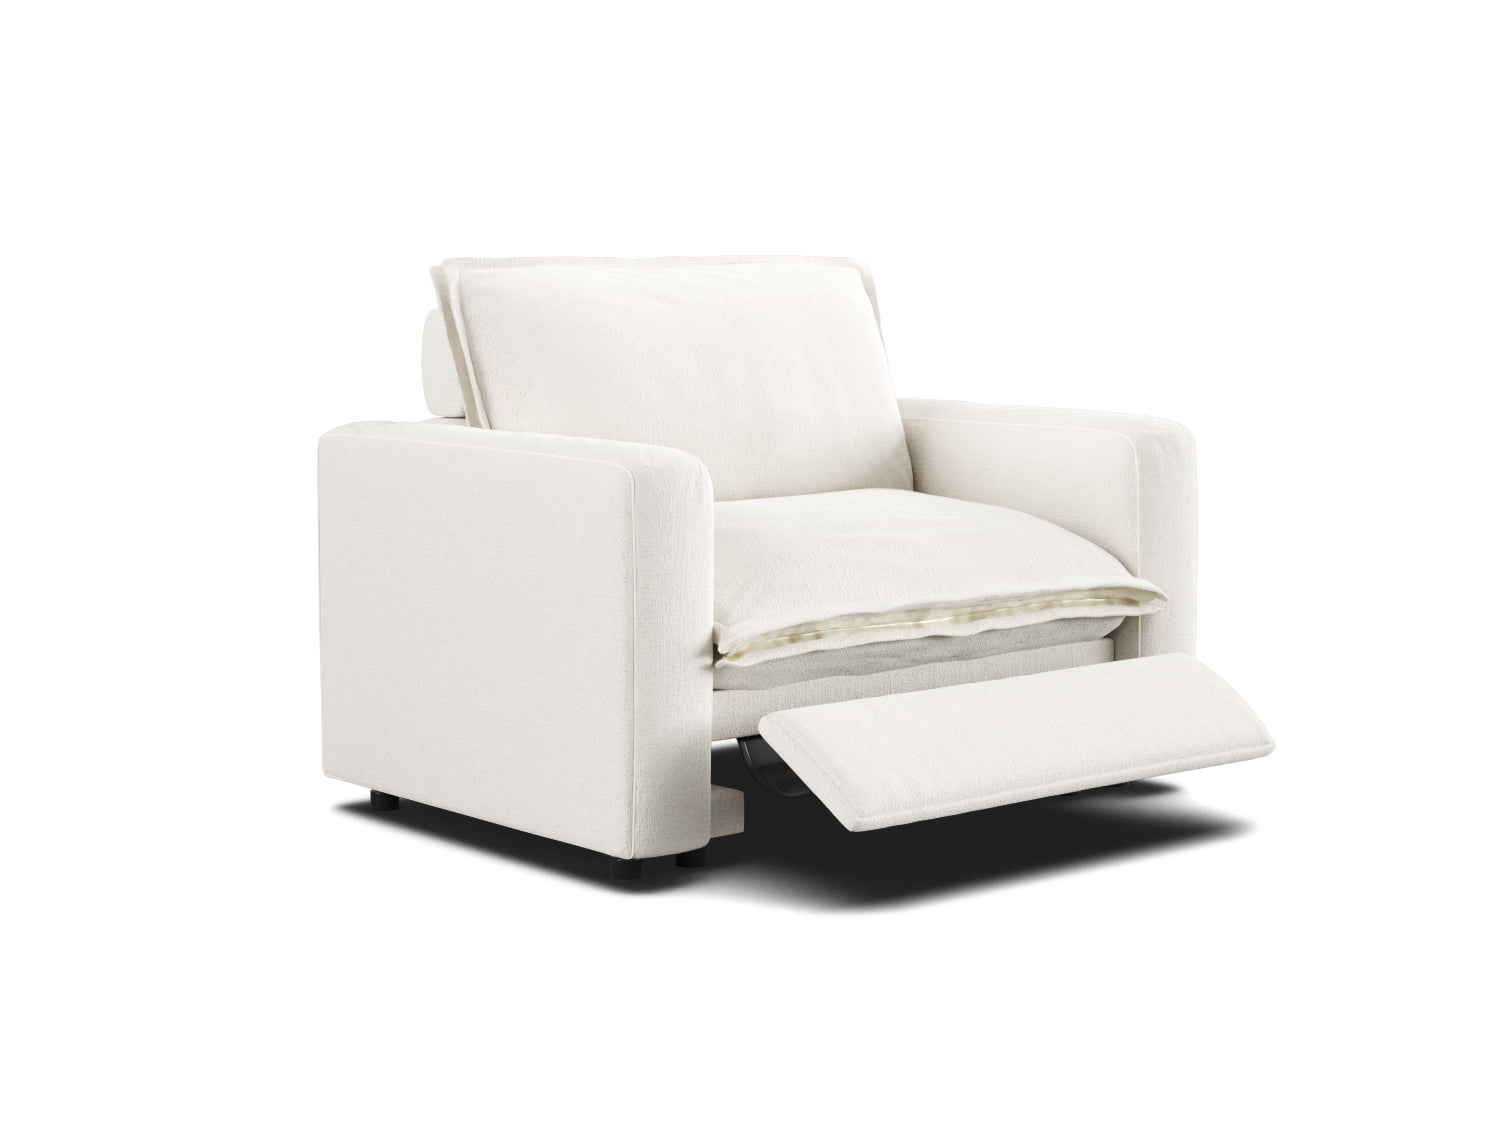 space-saving modular recliner sofa